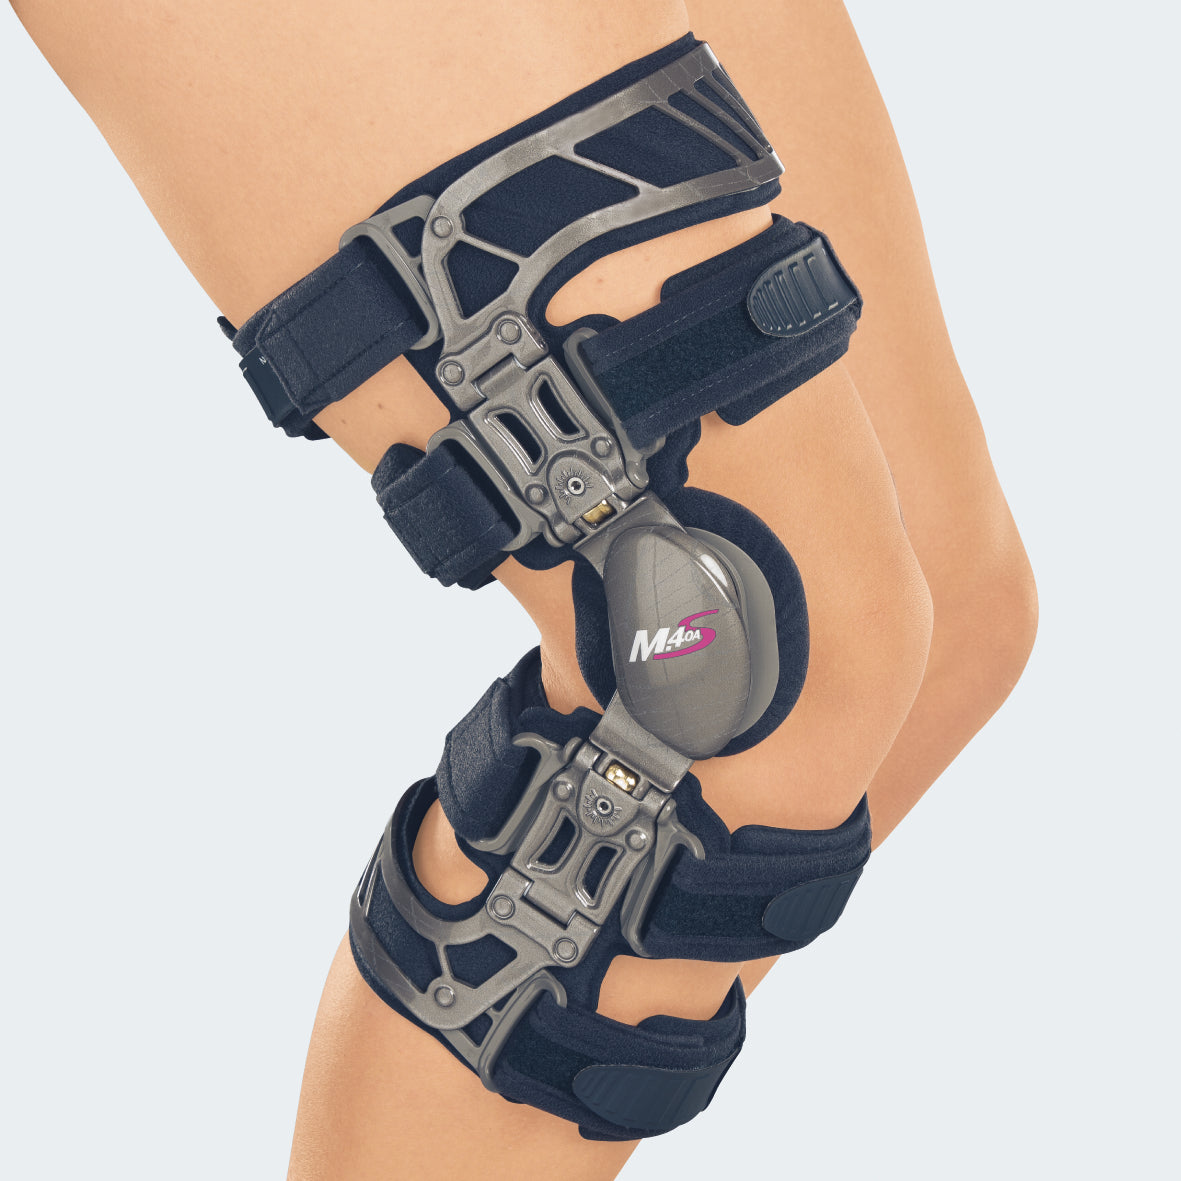 Best Knee Brace For Meniscus Tear – Dunn Medical